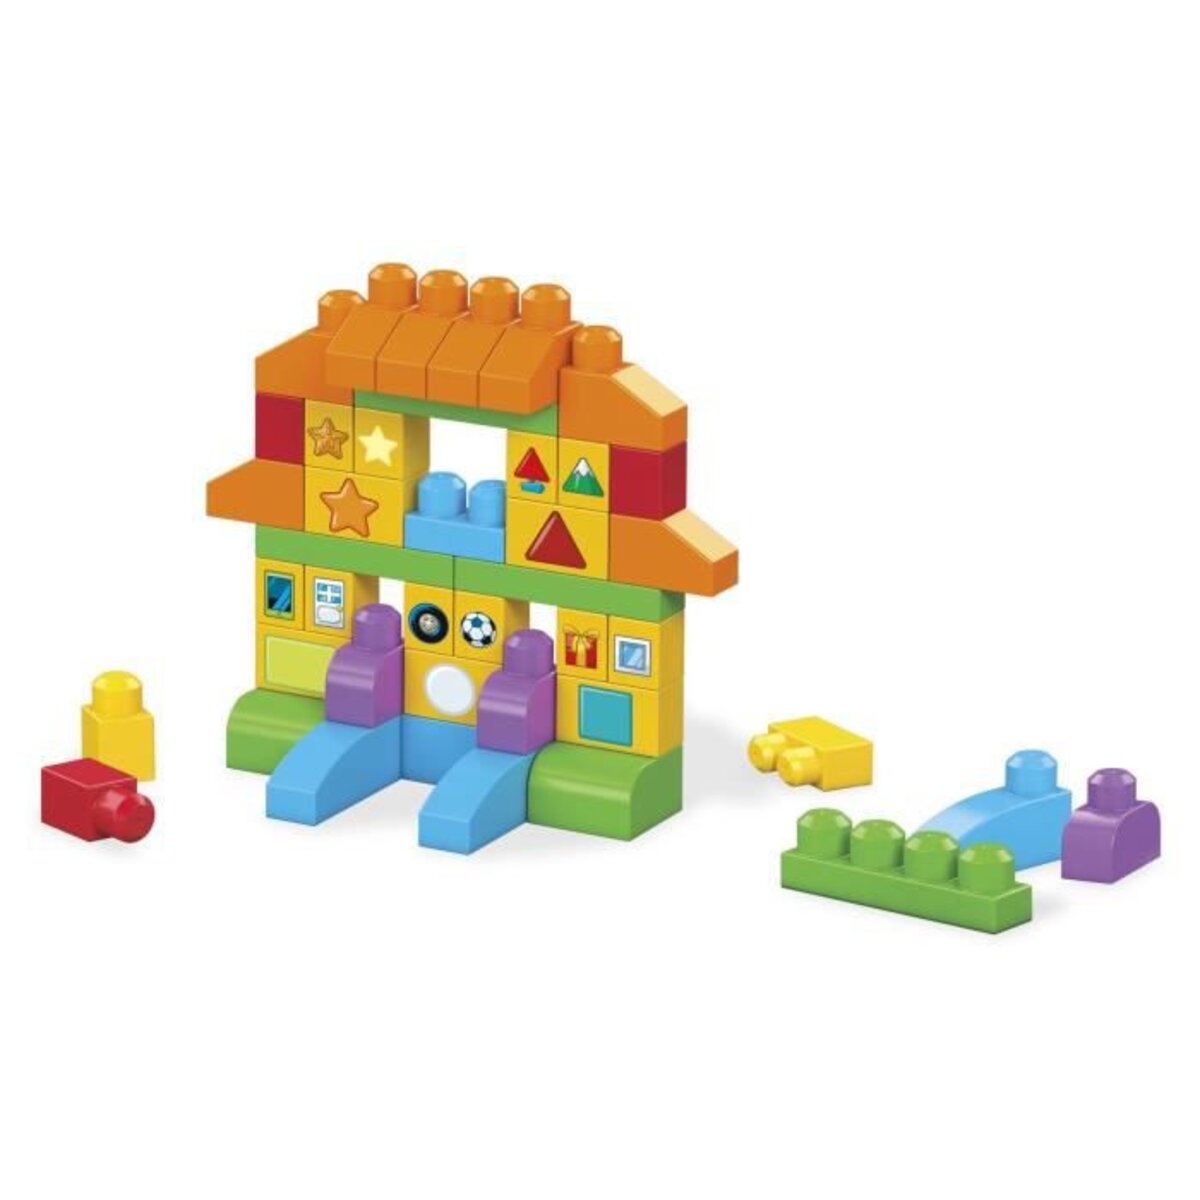 Mega Bloks Sac Blocs Construction Deluxe, 150 briques, jouet pour bébé et  enfant de 1 à 5 ans, FVJ49